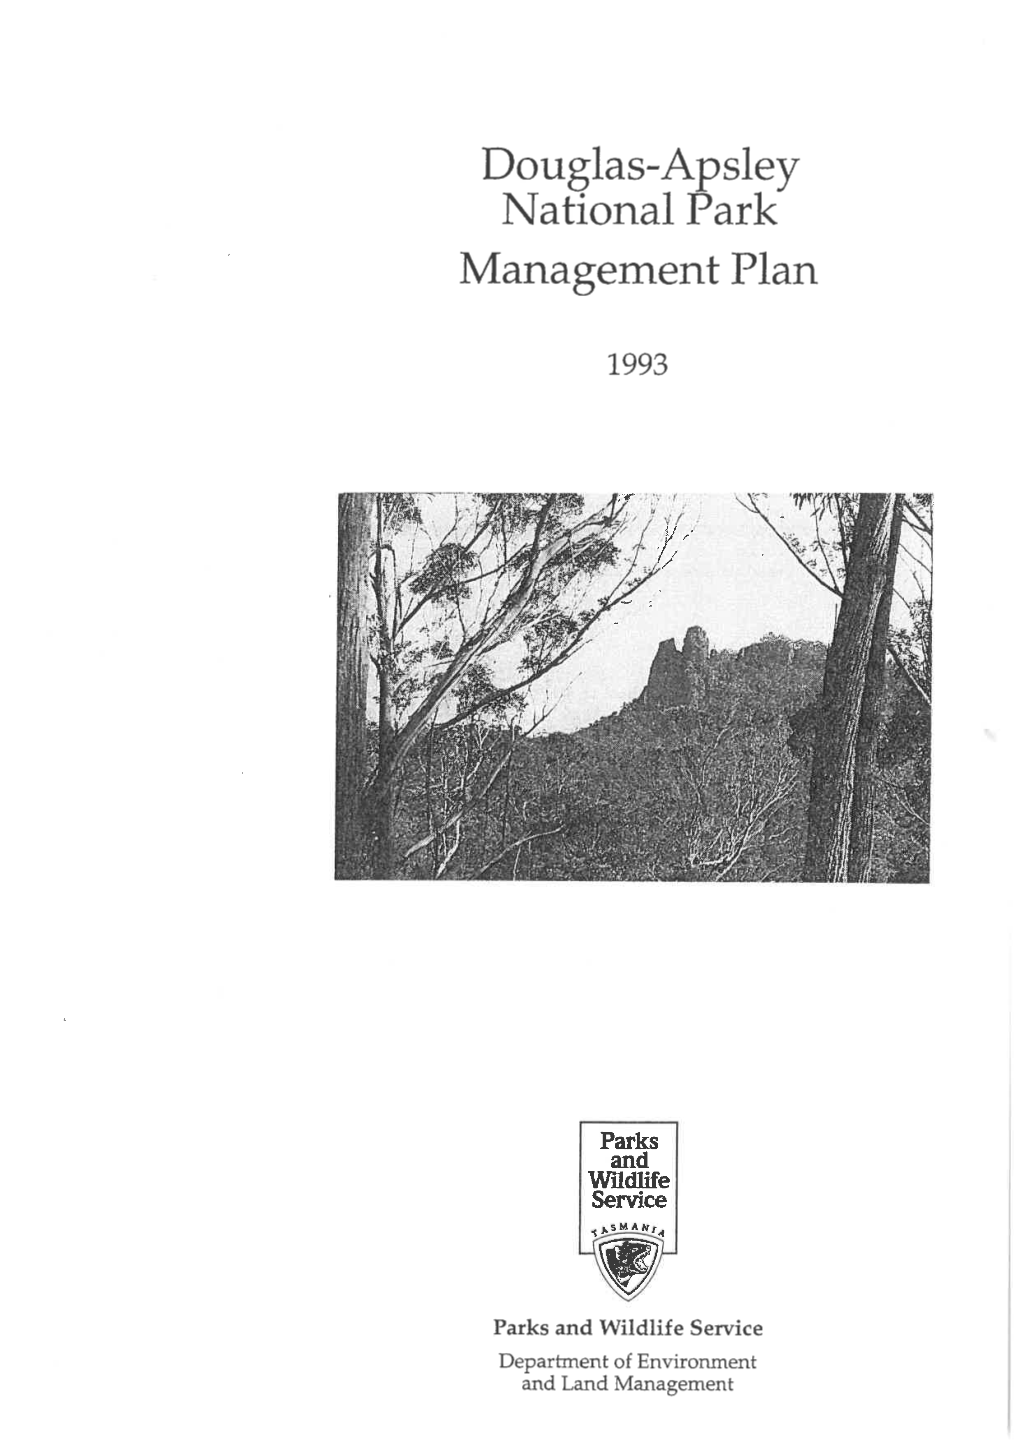 Douglas-Apsley National Park Management Plan 1993